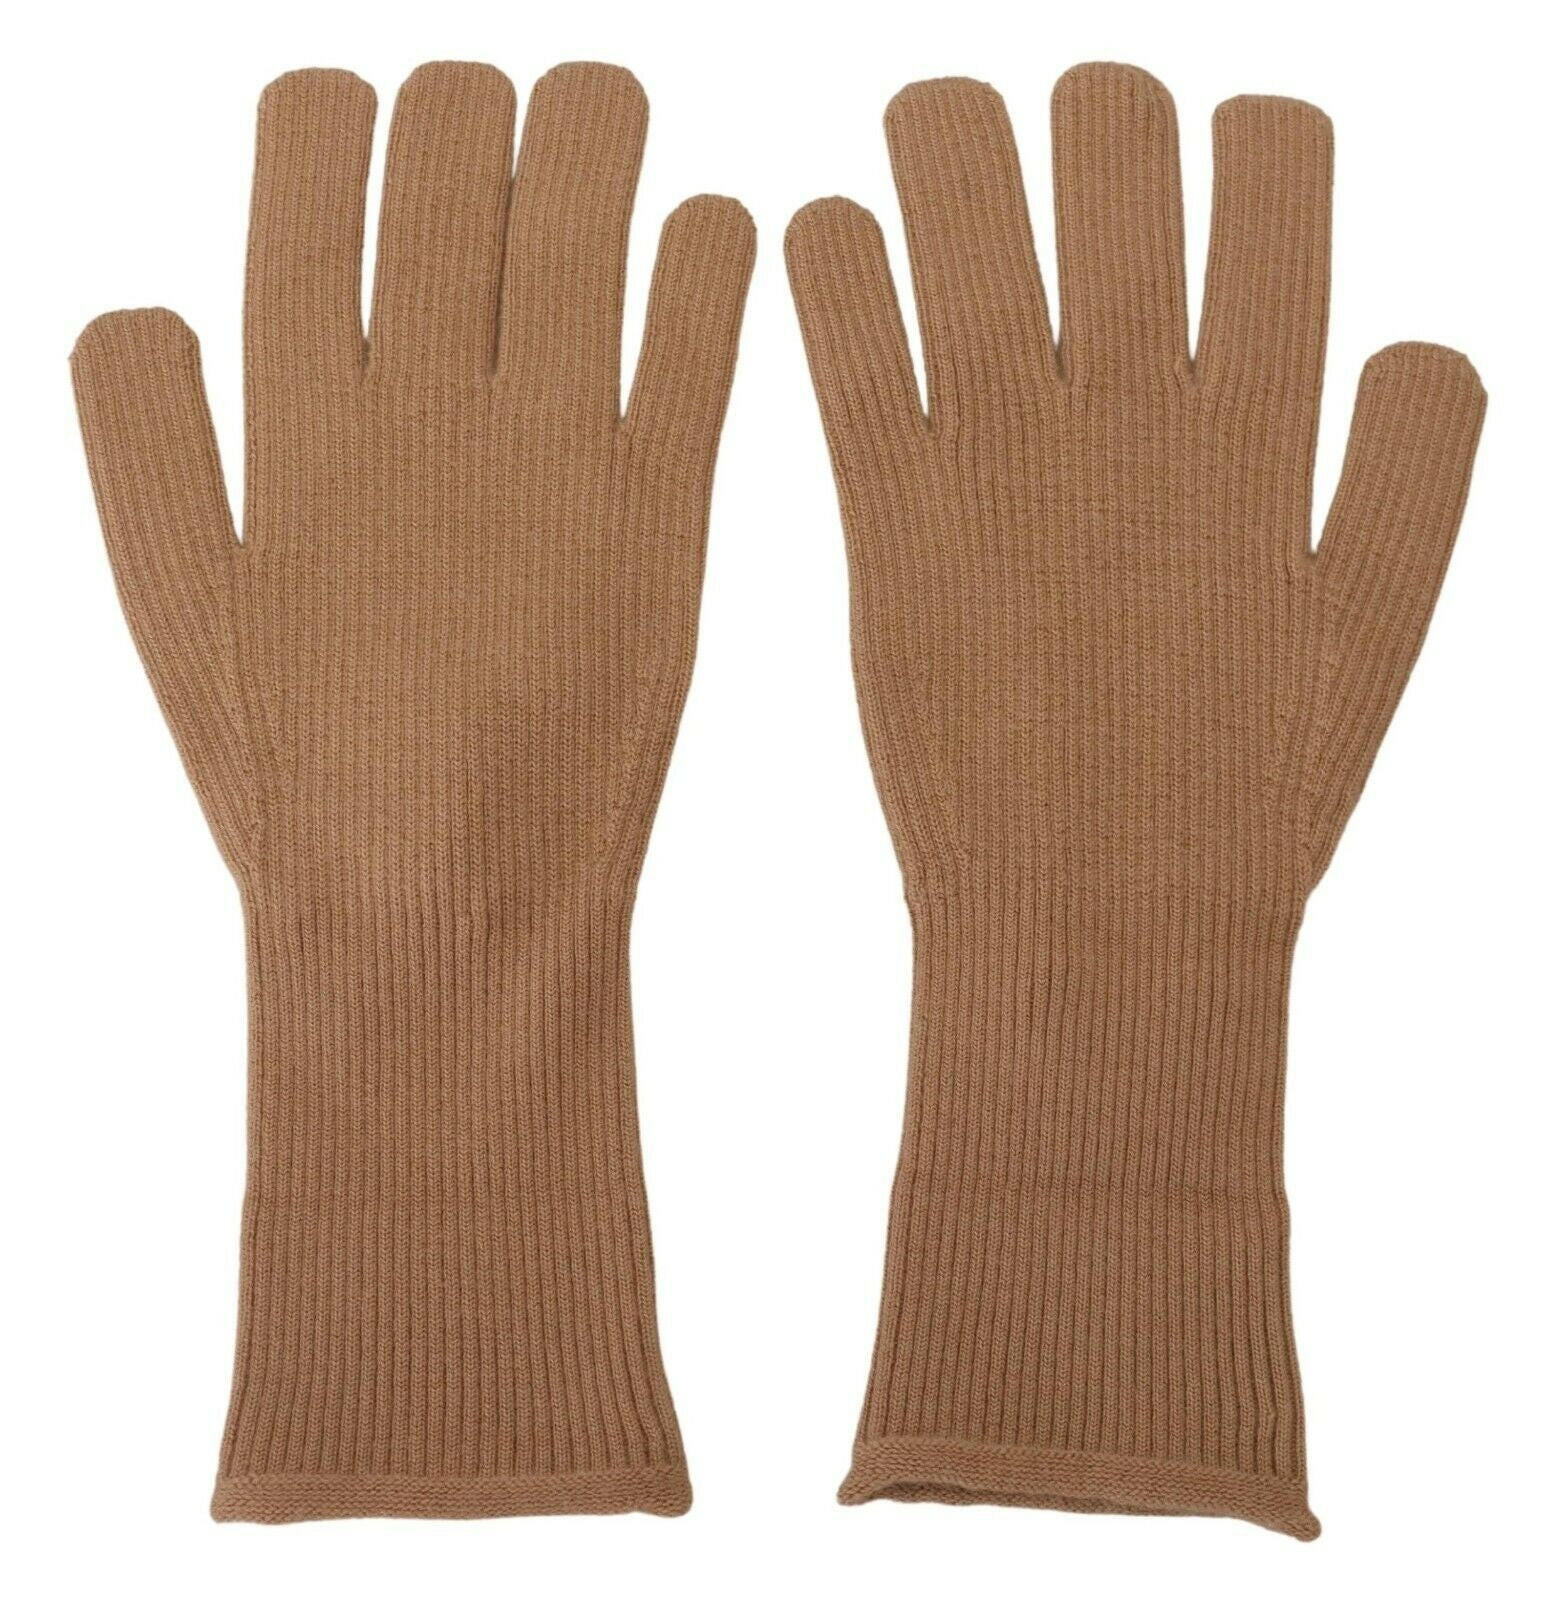 Dolce & Gabbana Beige Cashmere Knitted Hands Mitten Mens Gloves - GENUINE AUTHENTIC BRAND LLC  